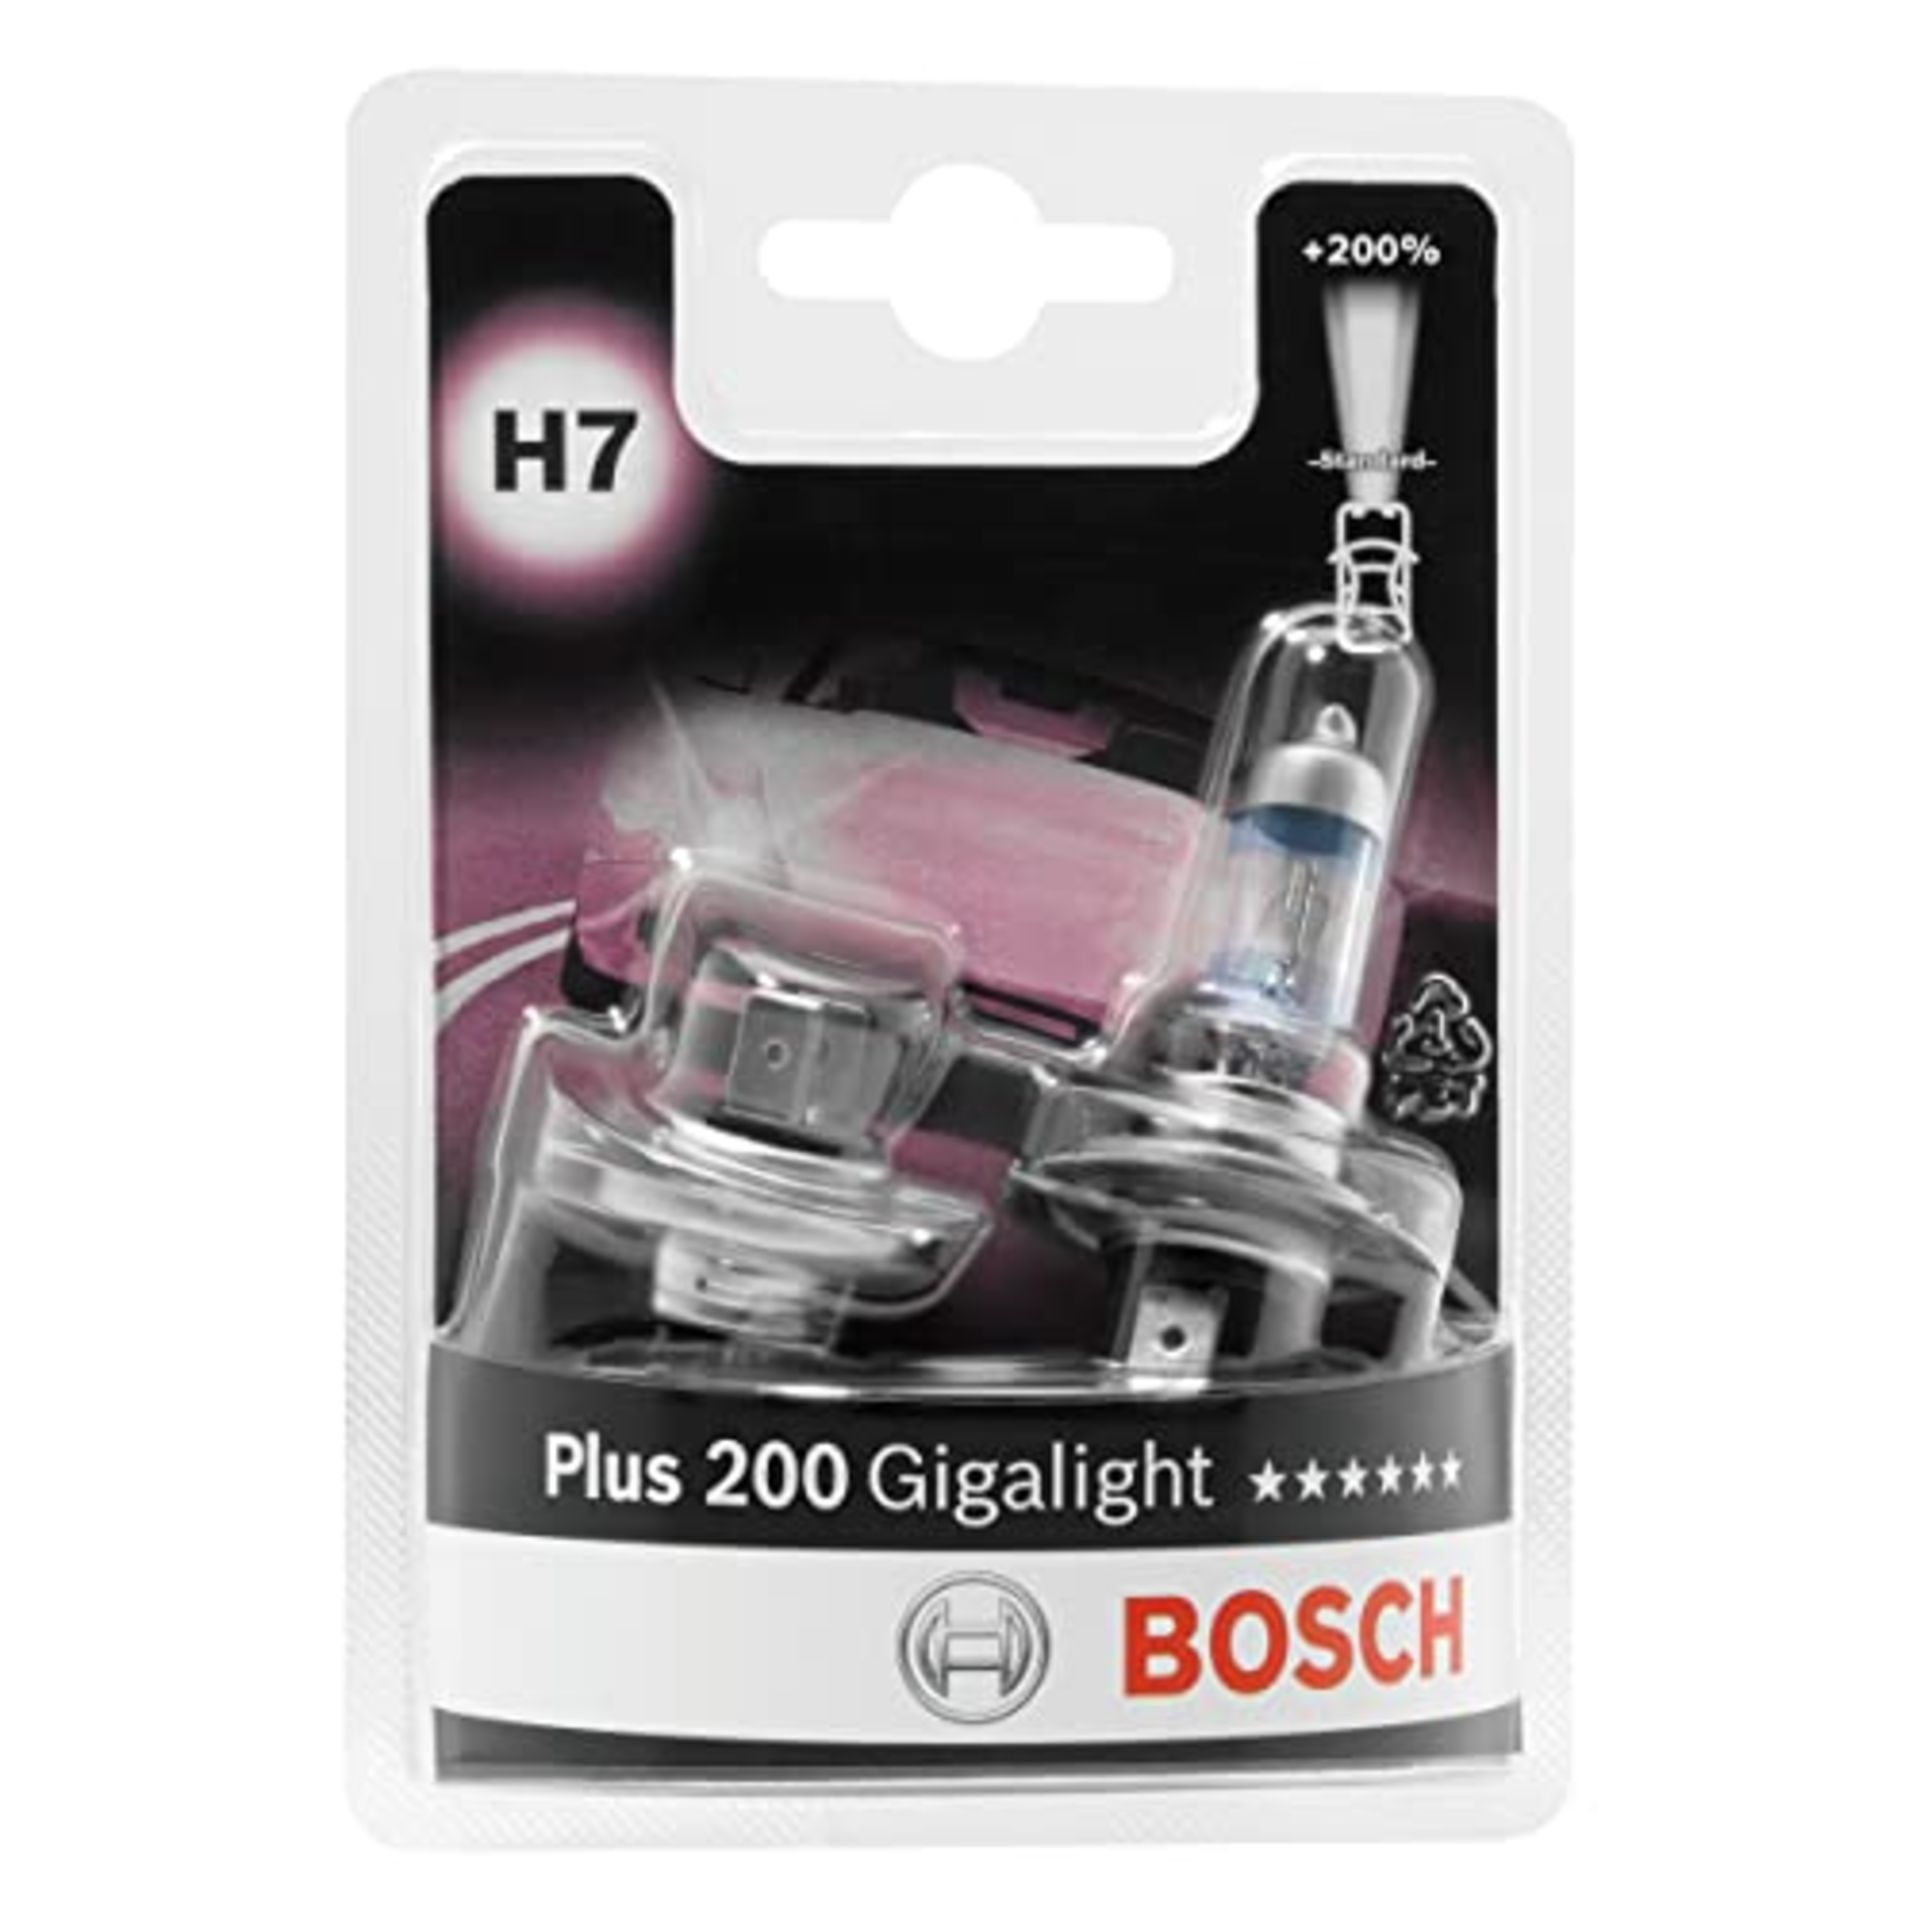 Bosch H7 Plus 200 Gigalight Lamps - 12 V 55 W PX26d - 2 Pieces